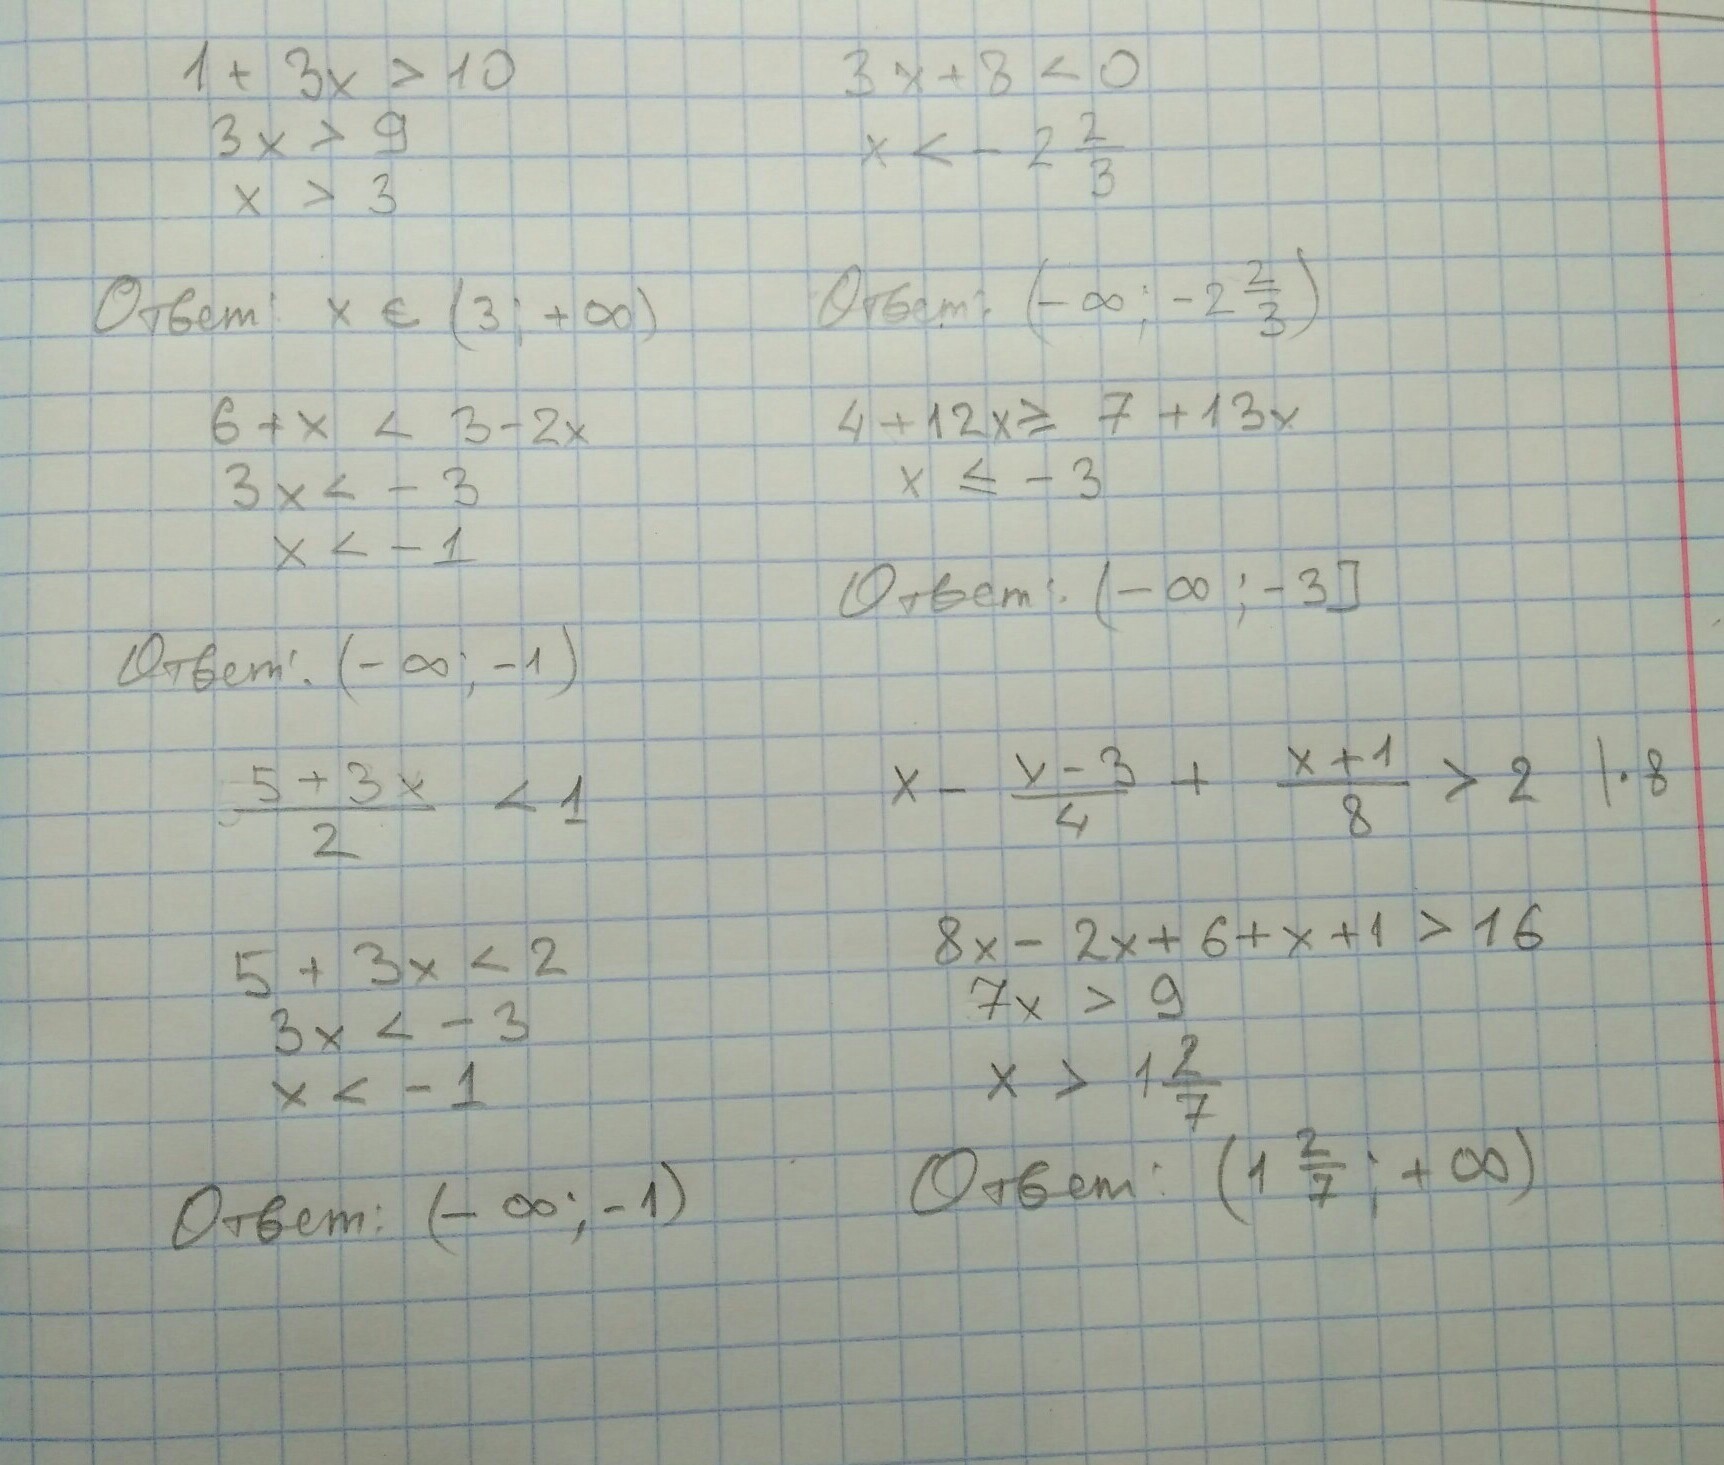 0.5 x 2 4 x 8. Решите неравенство .-4/(2х+8). 1/(X-2)(X-3) больше 0. 3x+2/x-4 меньше 0. Решение неравенства x2-3x-4 меньше или равно нулю.